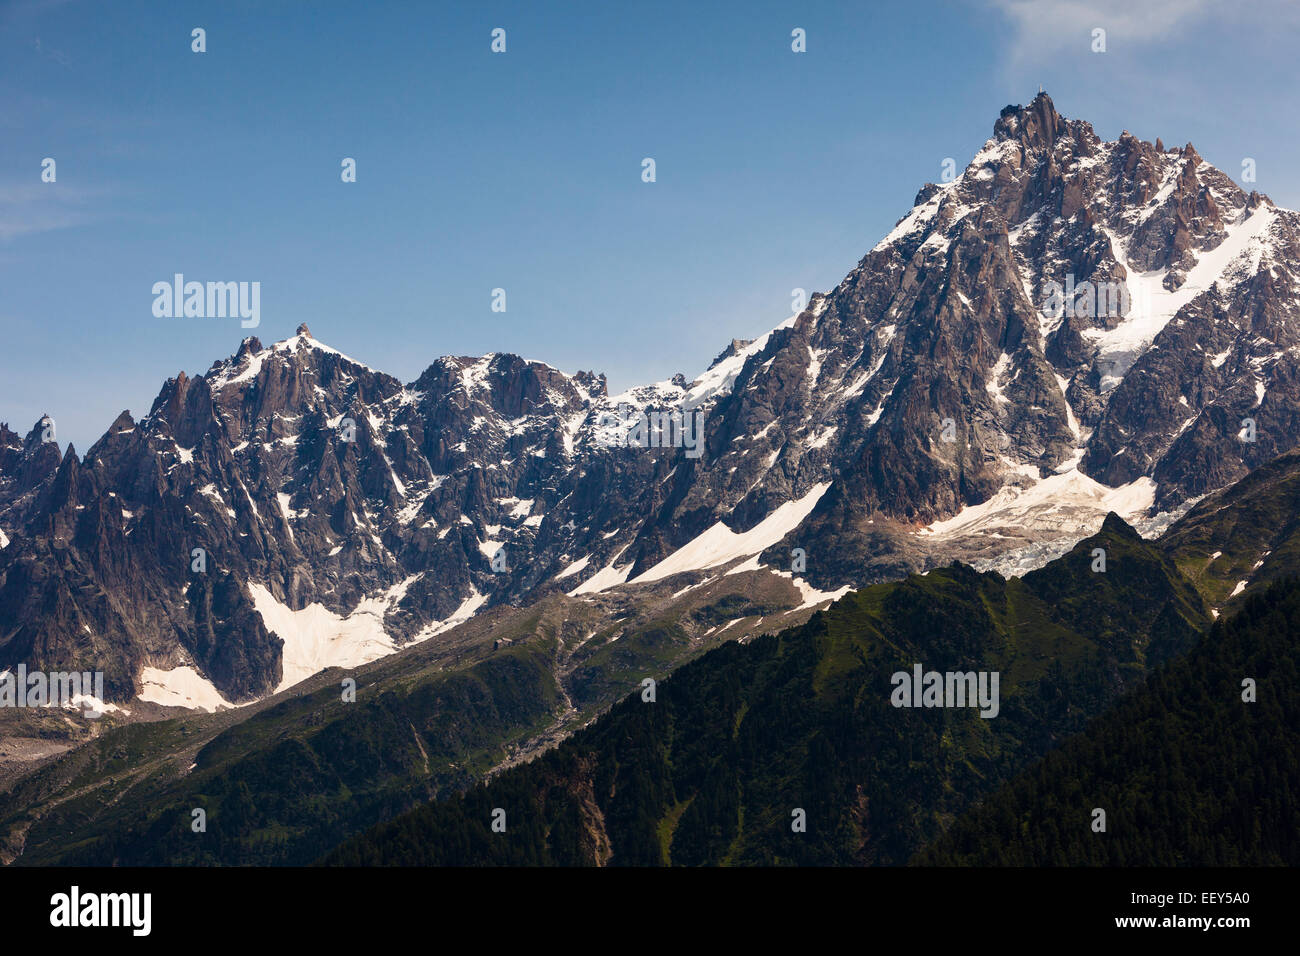 Aiguilles de Chamonix with the Aiguille du Midi, Mont Blanc massif, Rhone-Alpes, Haute-Savoie, French Alps, France Stock Photo